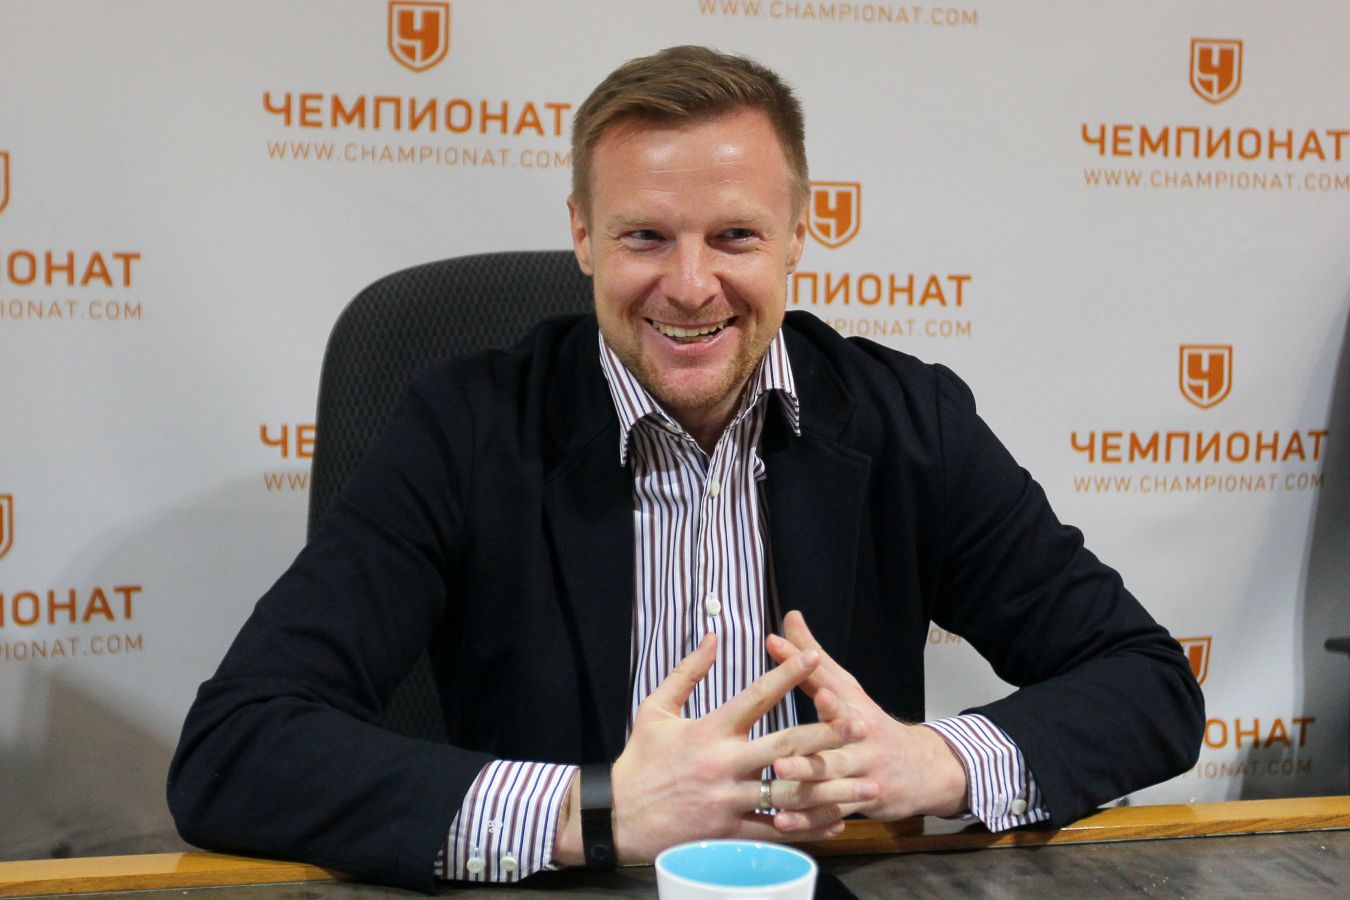 Вячеслав Малафеев: трудно прогнозировать, что «Зенит» сможет гарантировать титул